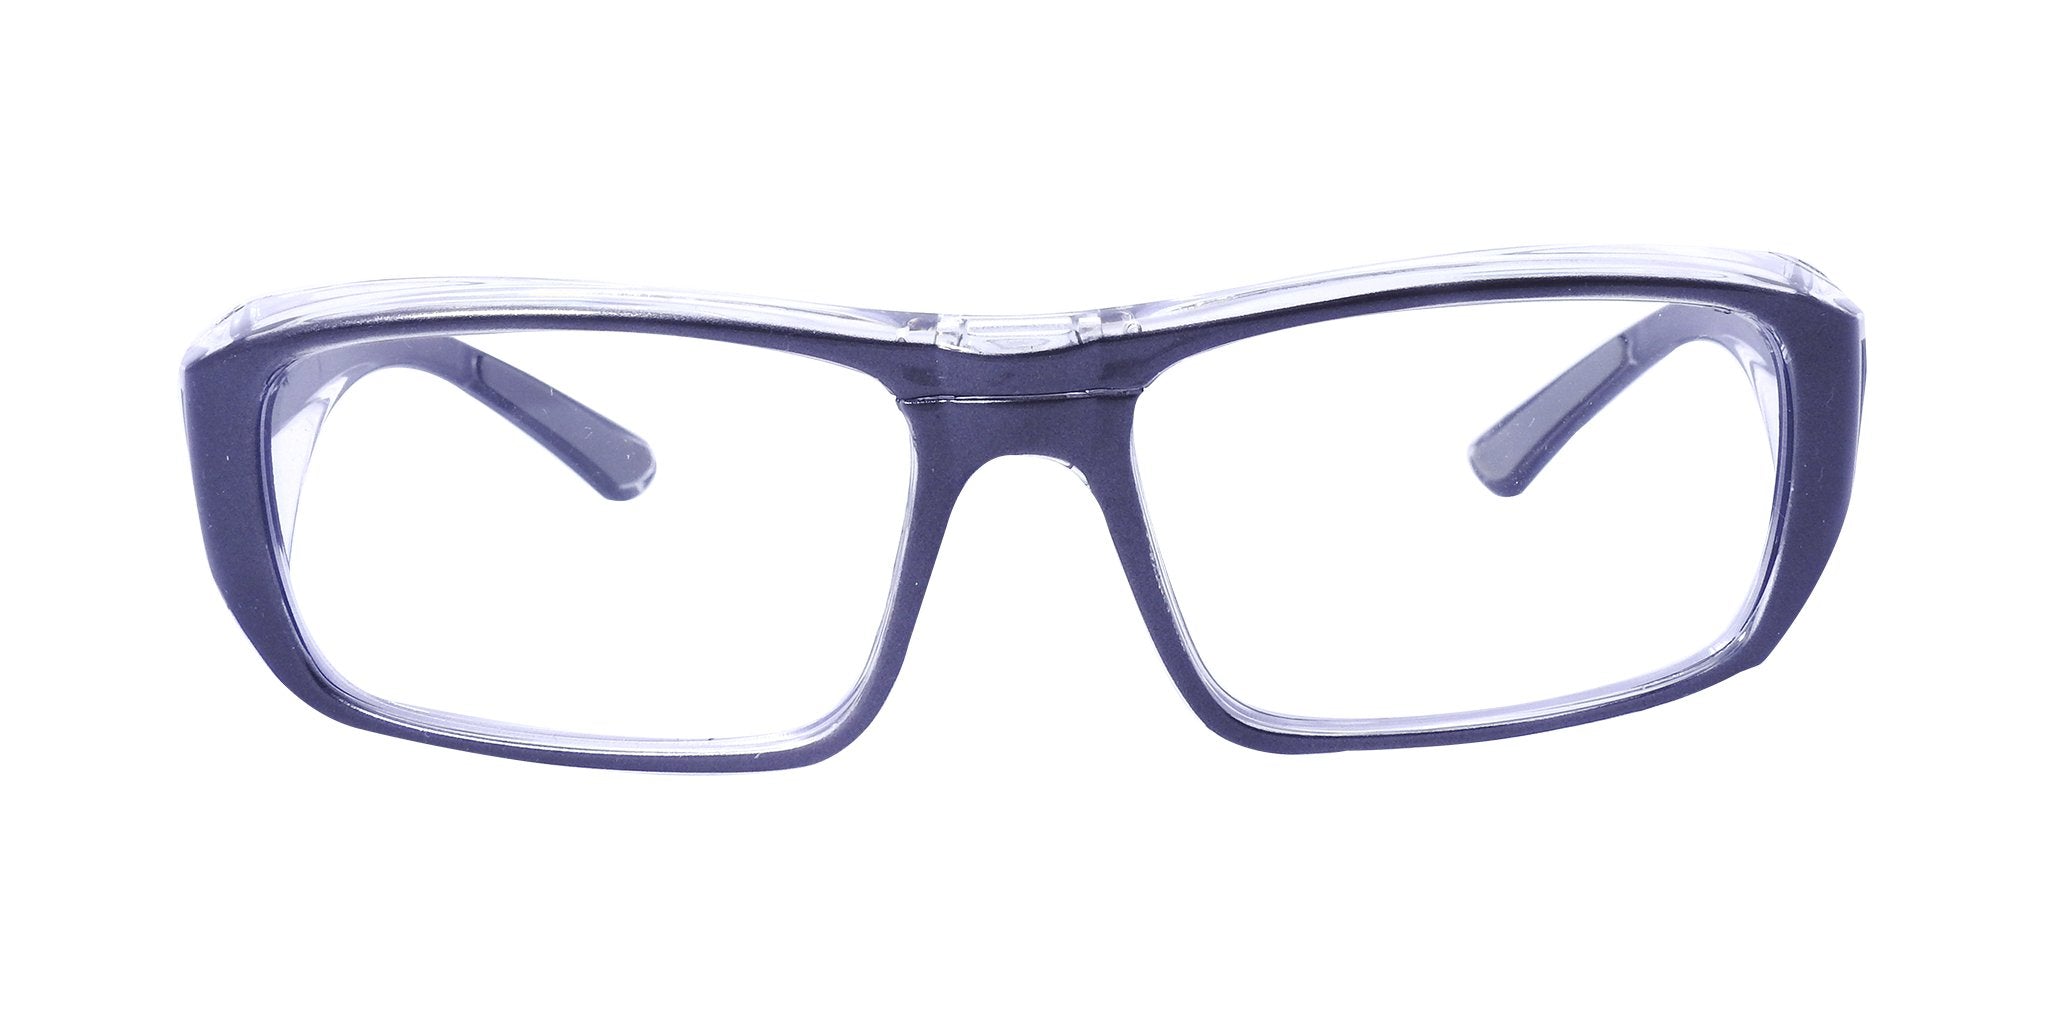 Óptica las gafas  Tipos de lentes oftálmicos - Óptica las gafas